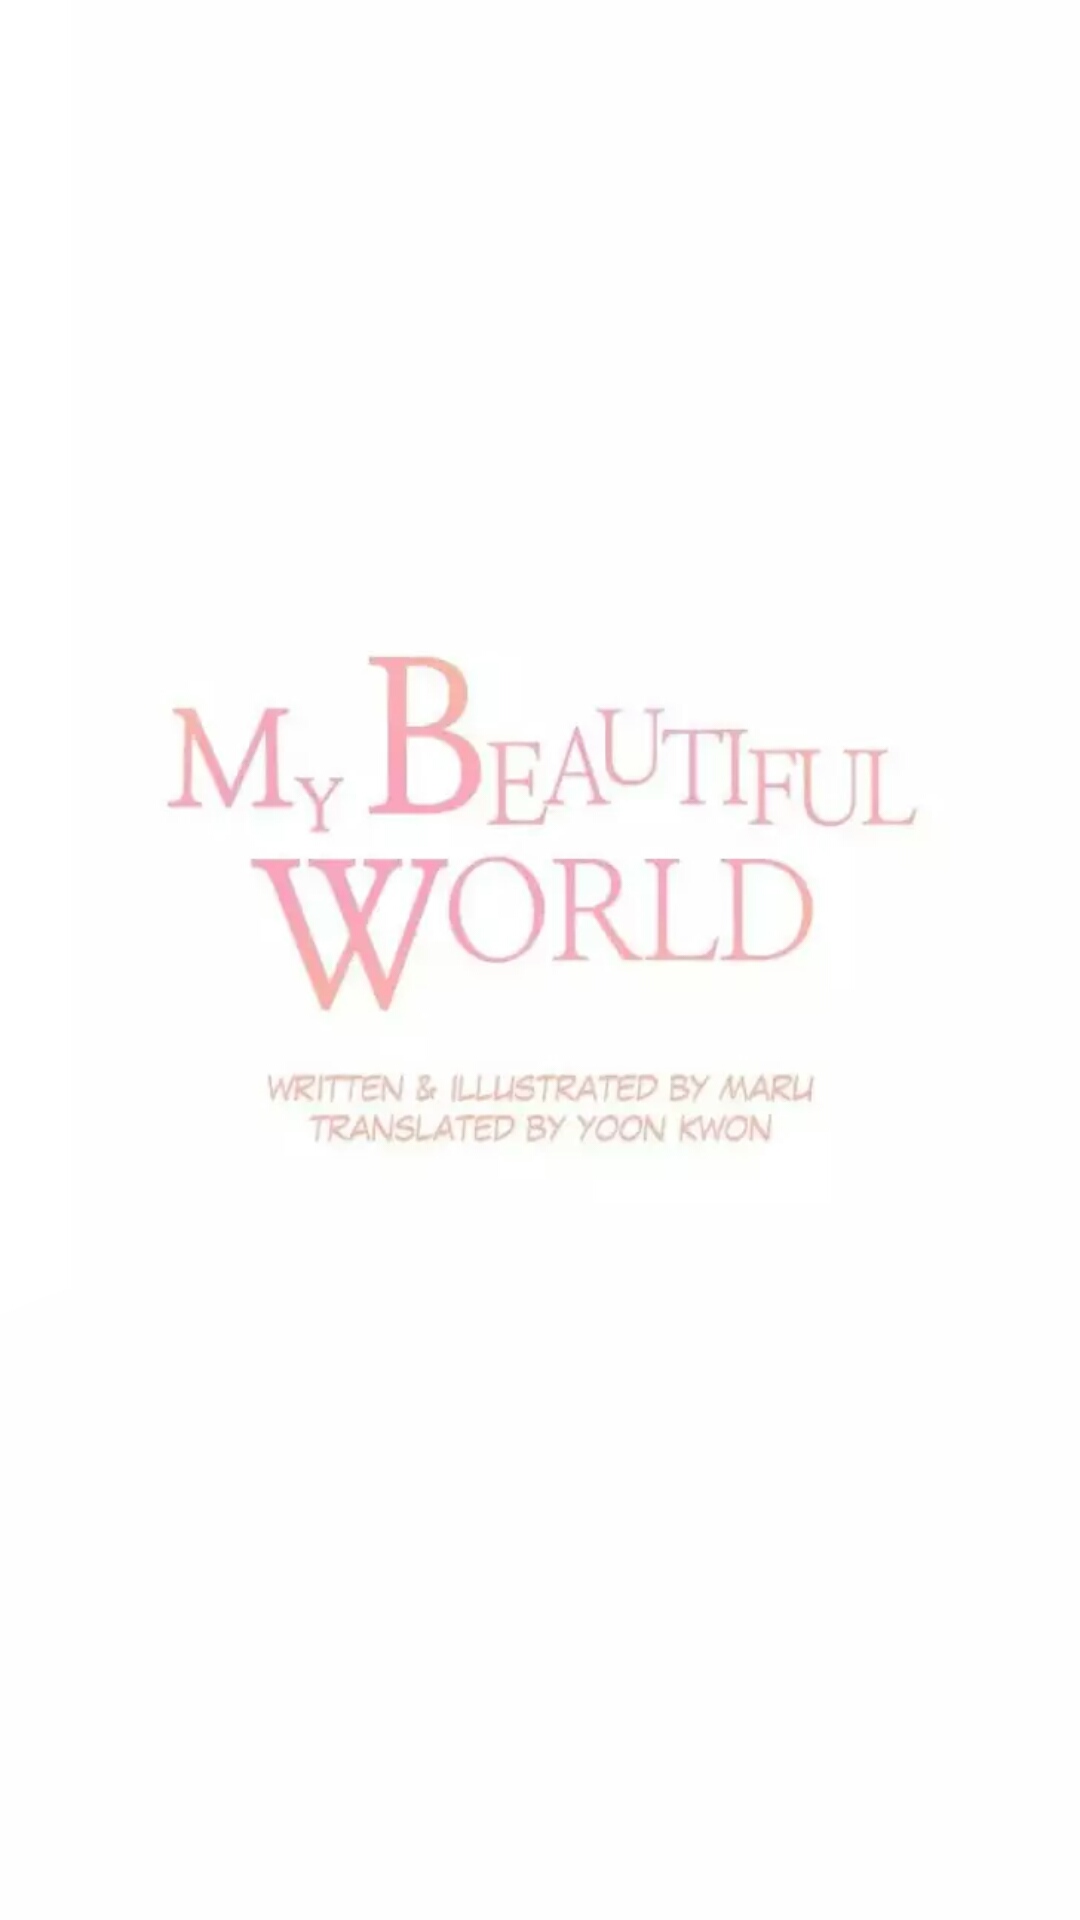 My Beautiful World Chapter 23